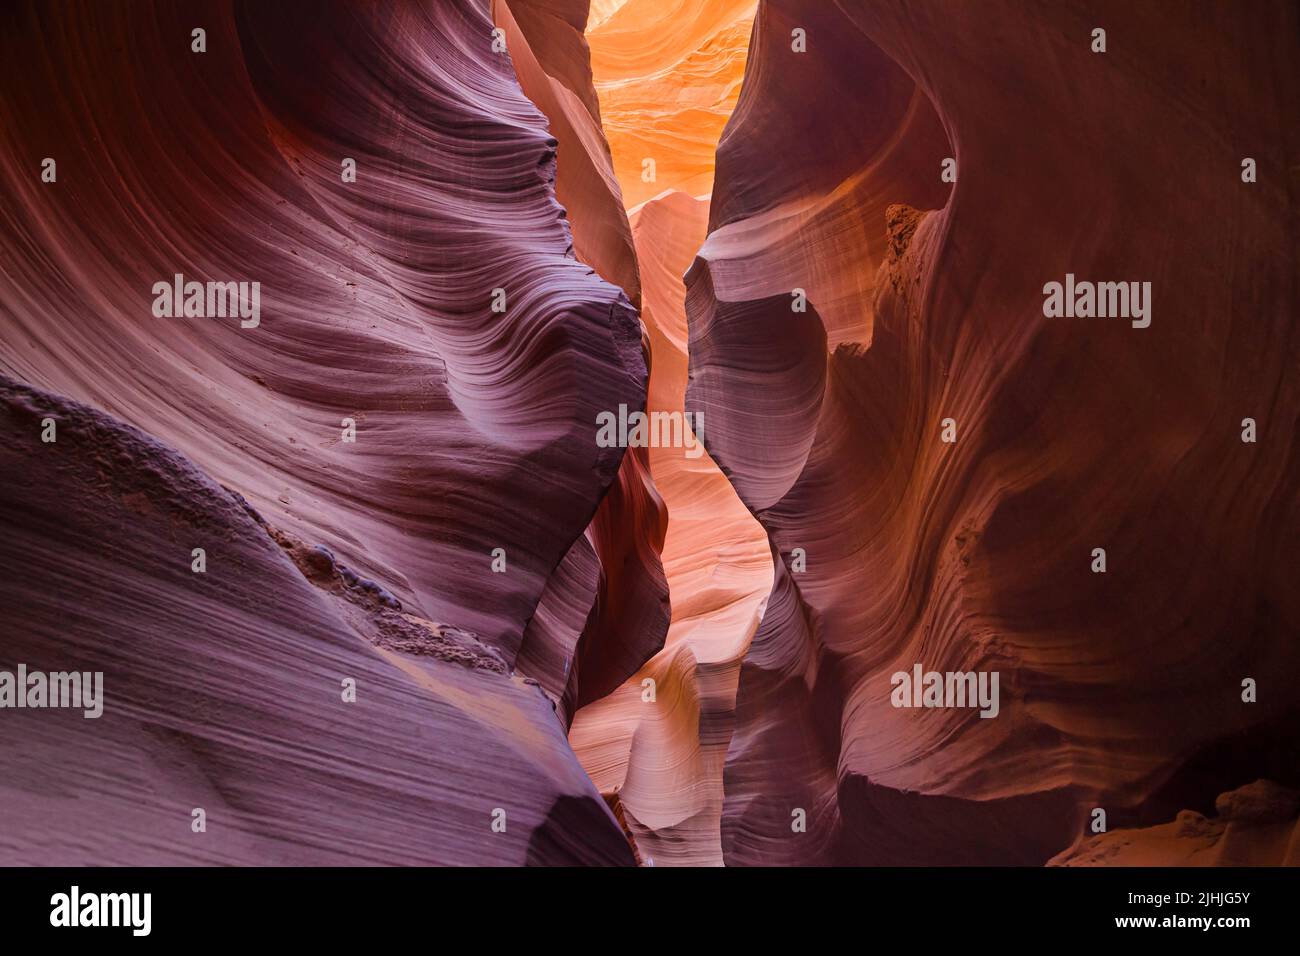 Sandstone walls of Lower Antelope Canyon, Arizona, United States. Stock Photo